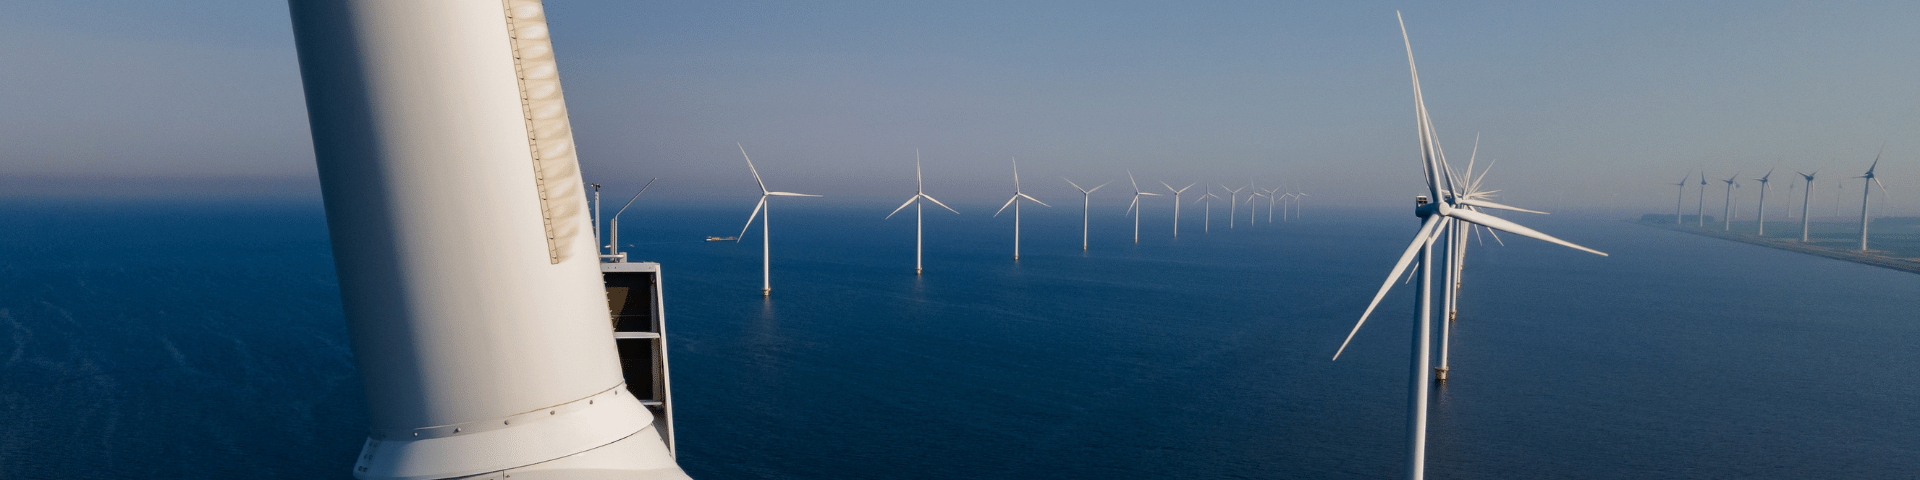 Winstgevendheid offshore wind in 2030 niet vanzelfsprekend